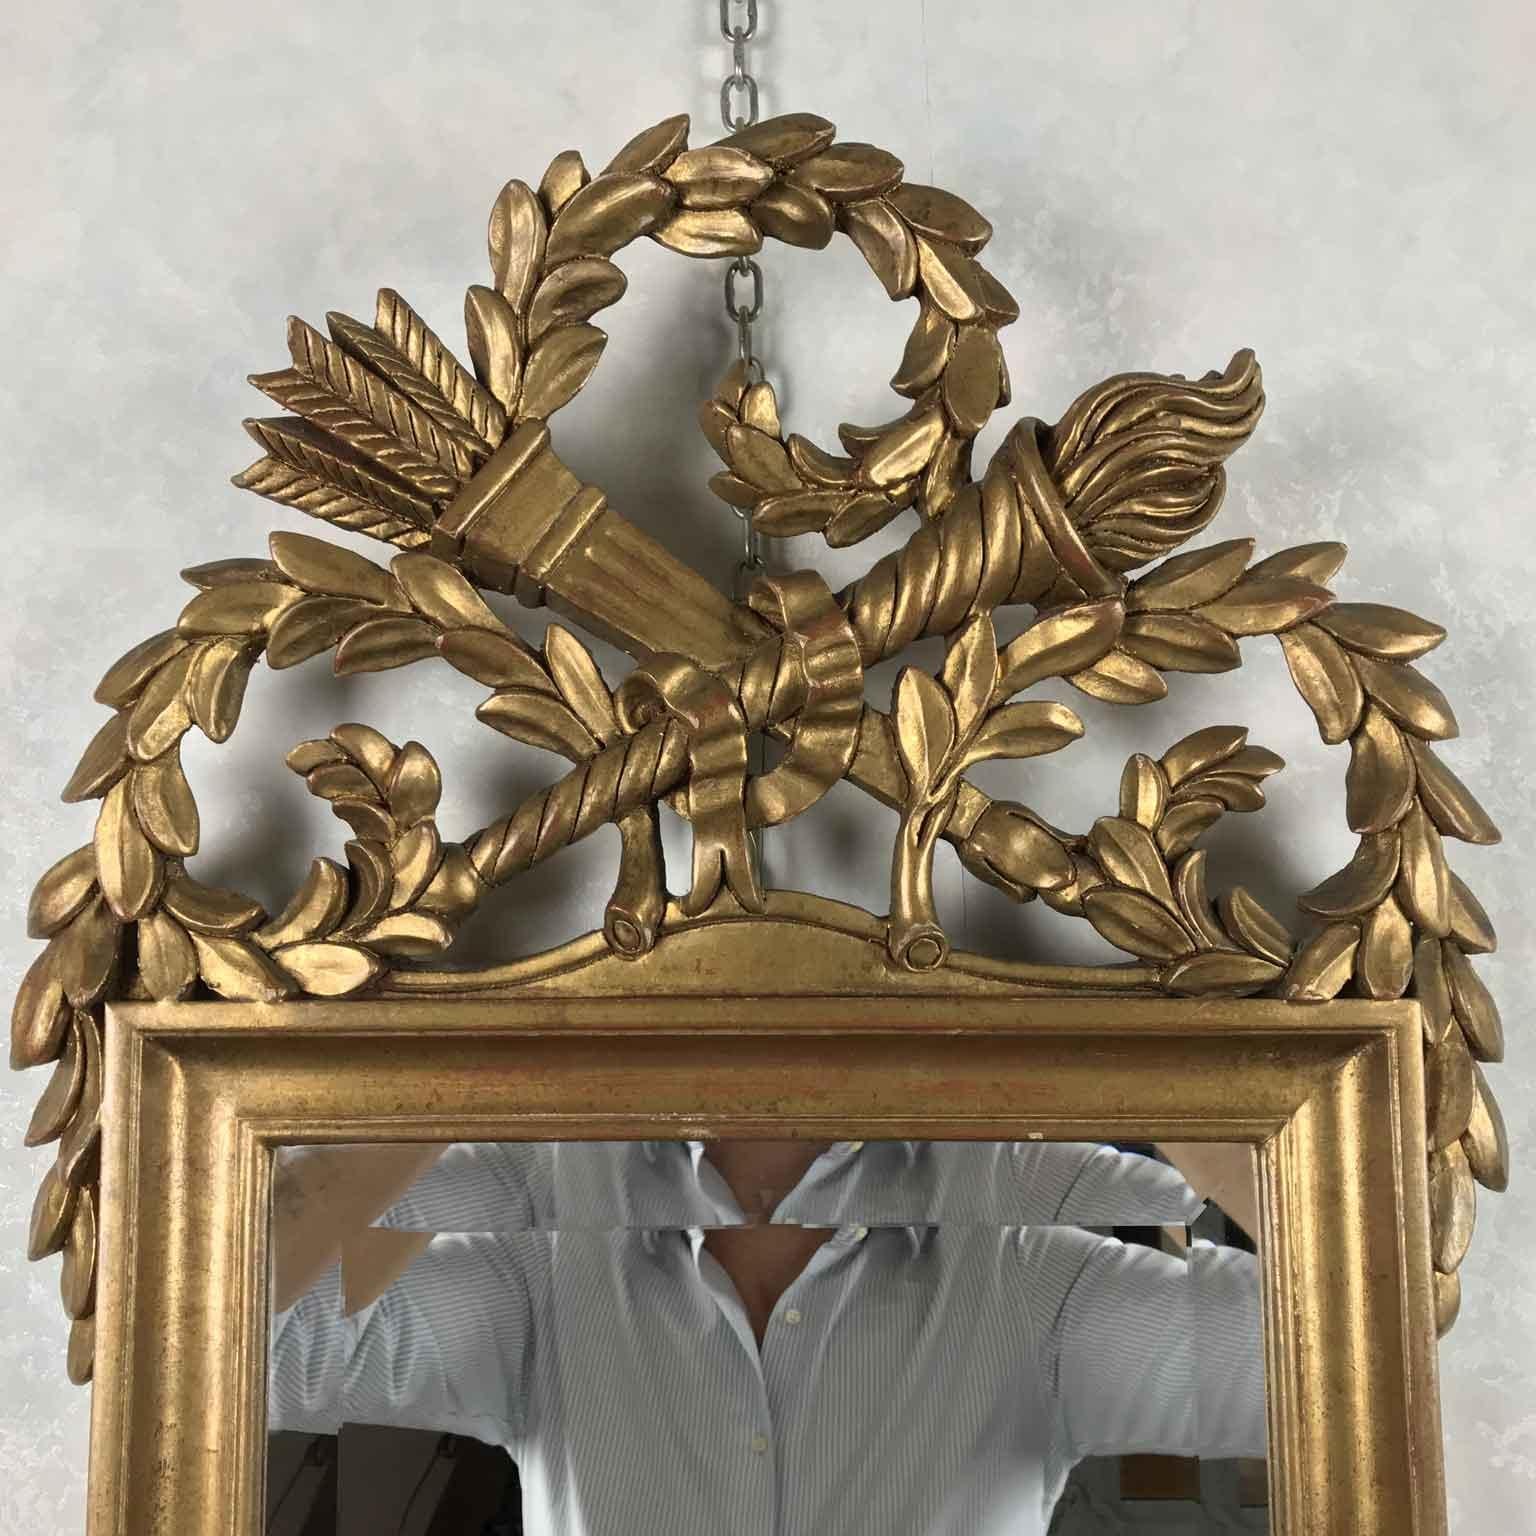 D'Italie, par Chelini Firenze, un beau miroir doré à la feuille d'or de la fin du 20ème siècle avec des éléments sculptés à la main de style Empire comme le carquois et la torche.

Fabriqué vers les années 1990 par Chelini Florence, il est en bon